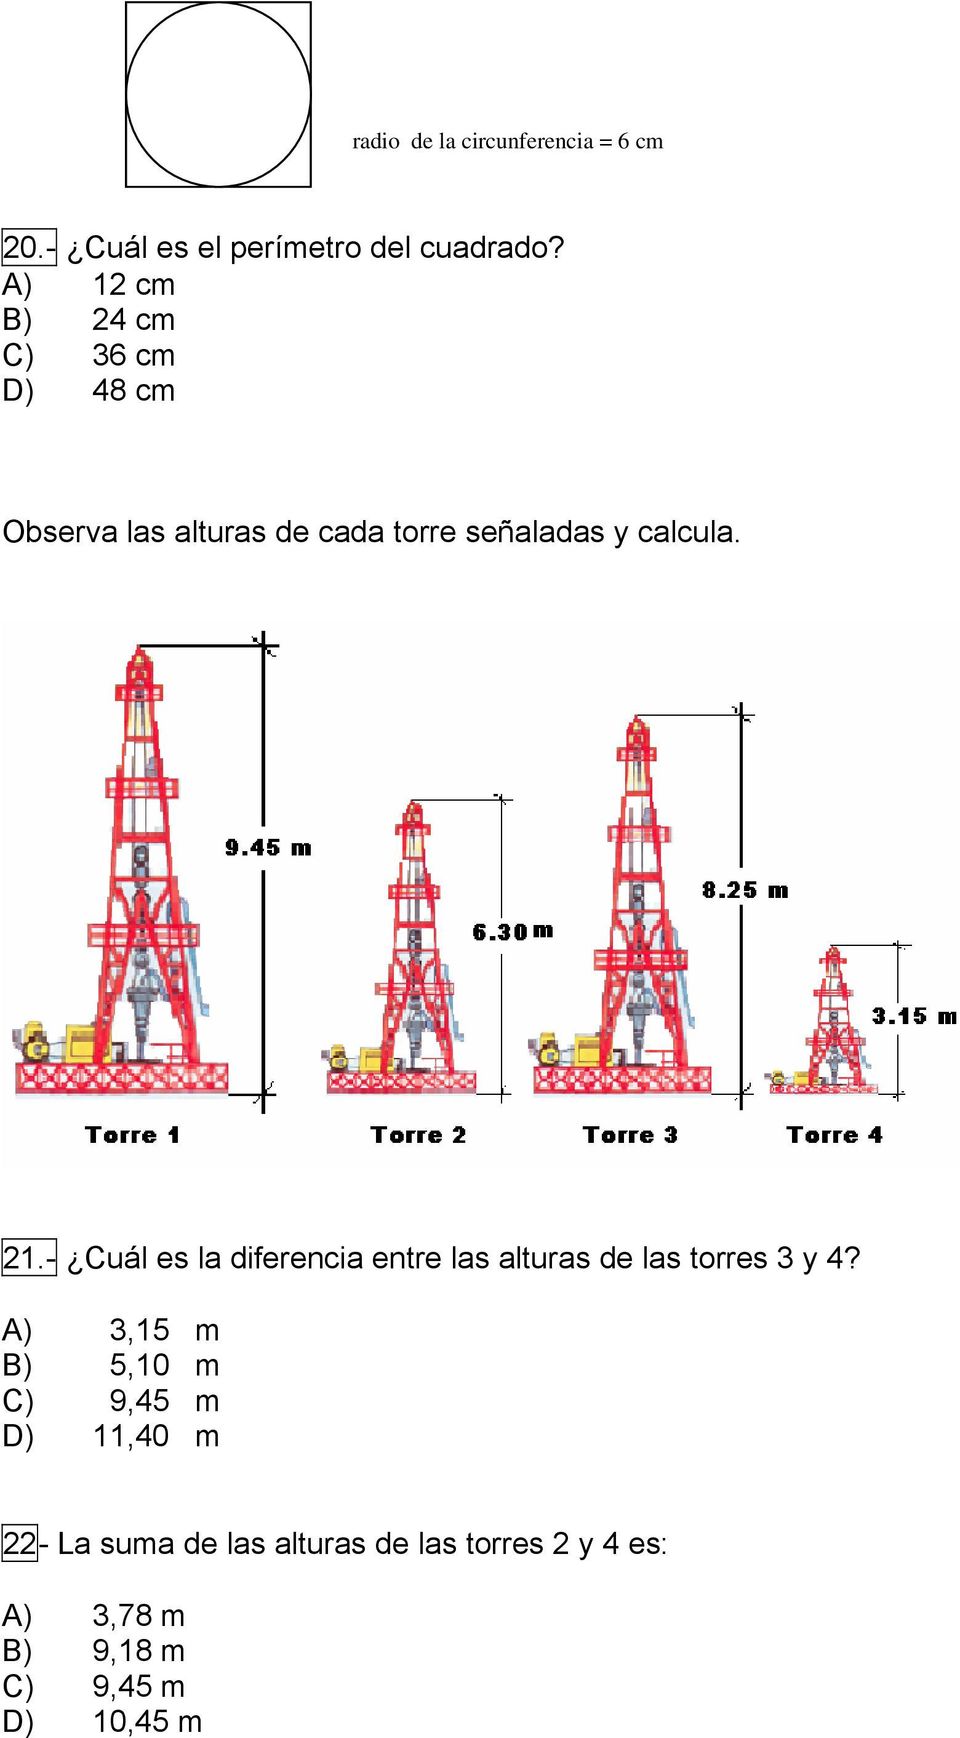 21.- Cuál es la diferencia entre las alturas de las torres 3 y 4?